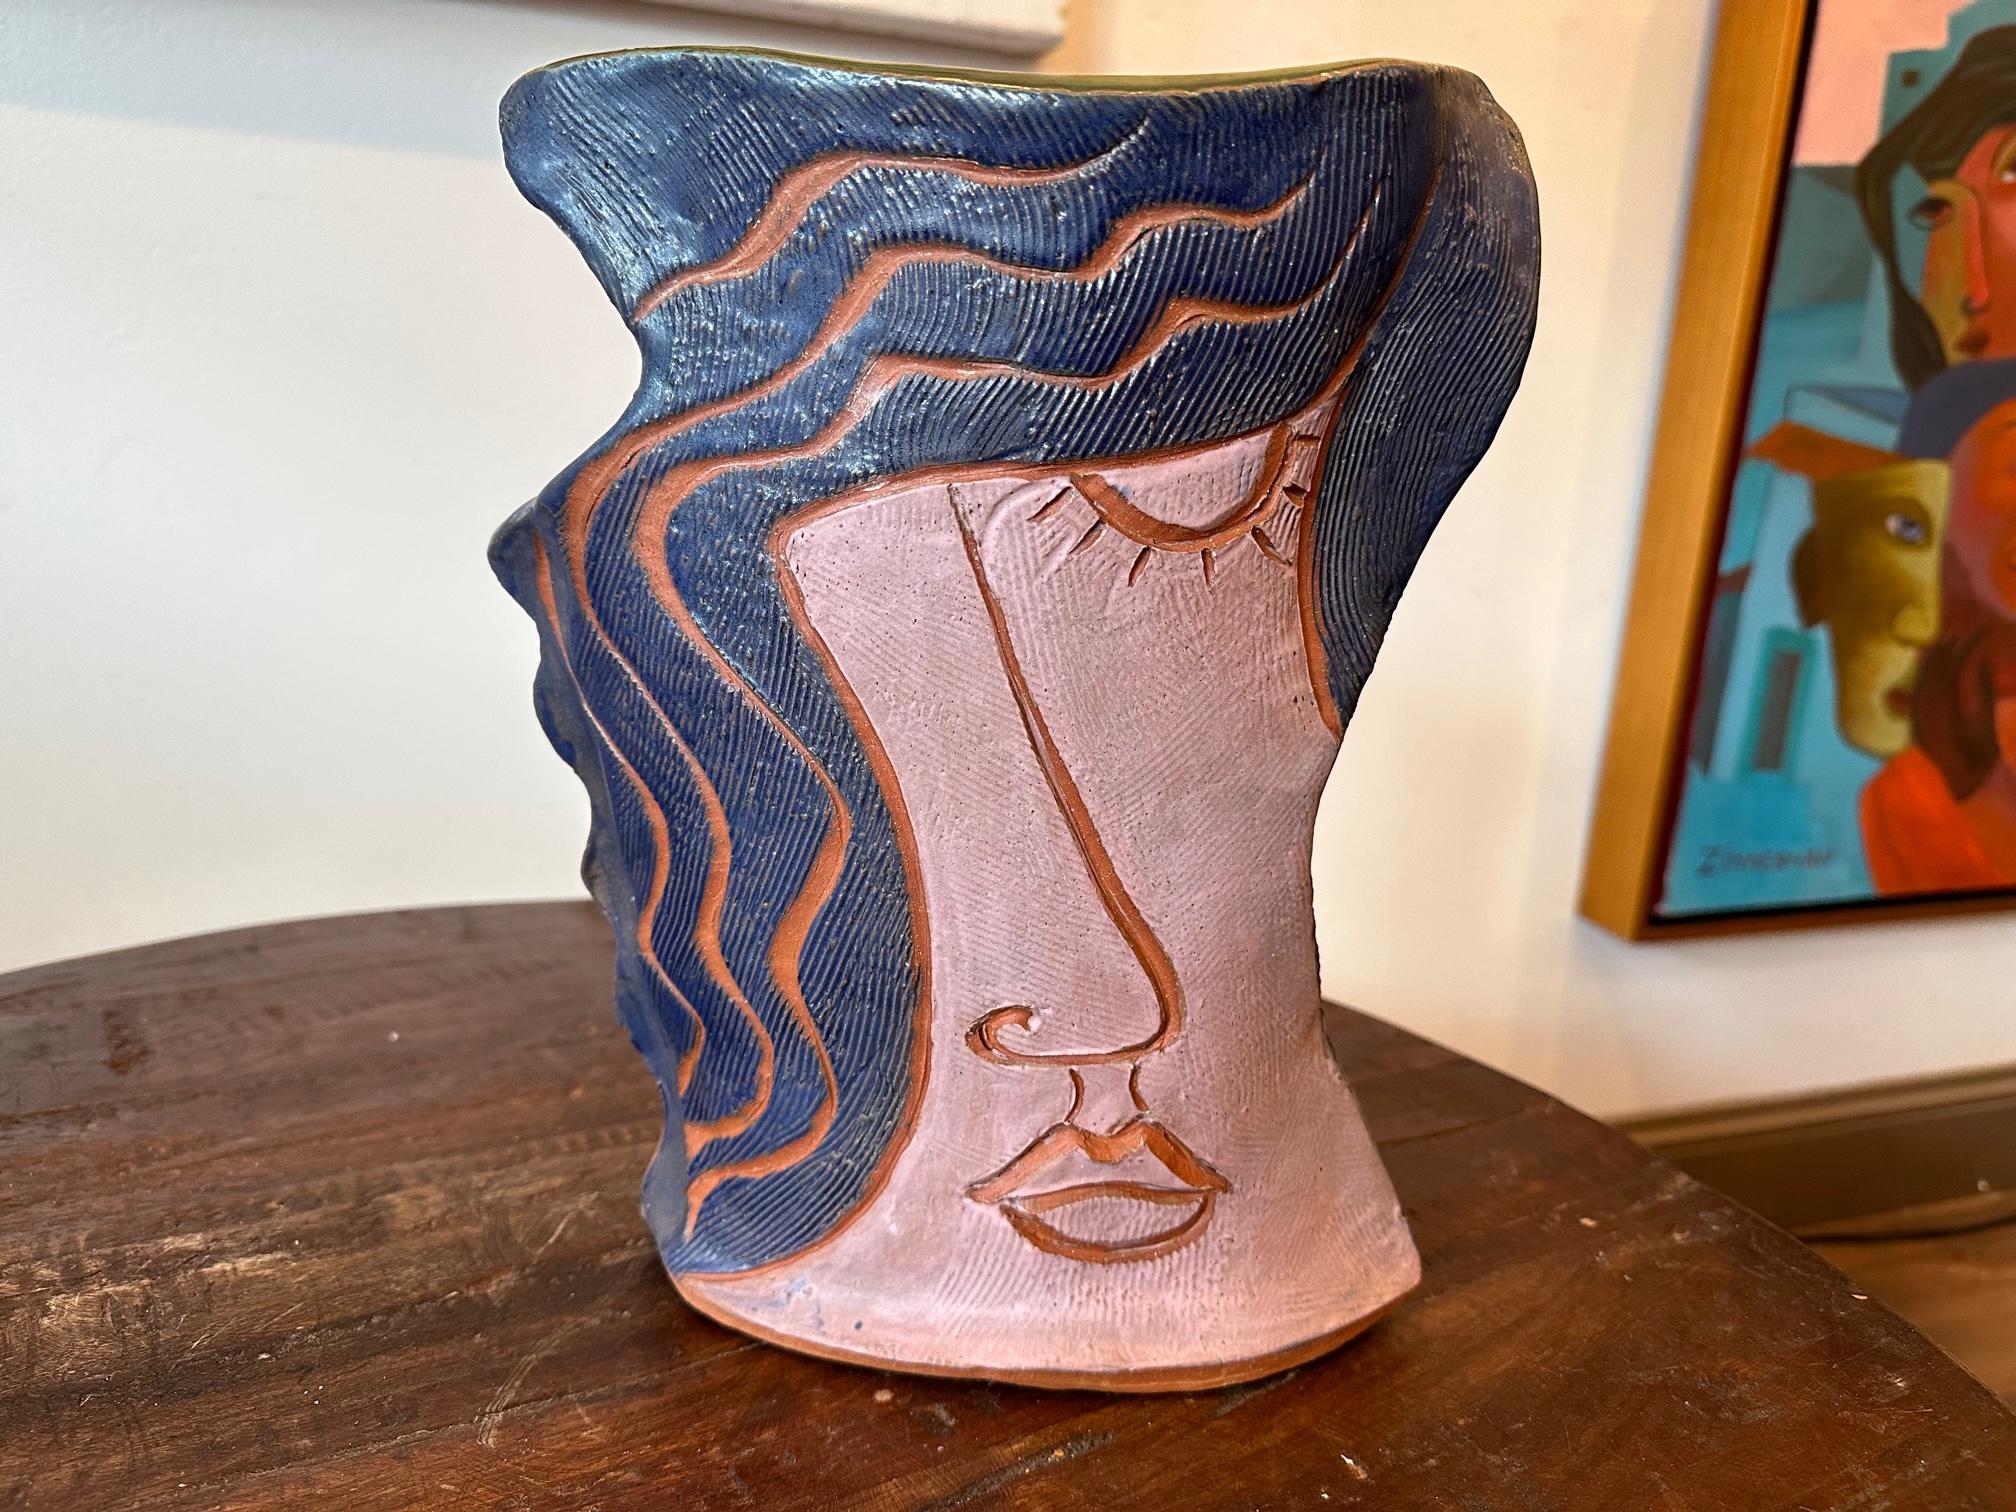 Funktionelle Kunst Skulptur einzigartig von Marc Zimmerman

Figurative Vase - Gesicht - Tonskulptur

Diese skurrile Tonskulptur, die der talentierte Künstler Marc Zimmerman geschaffen hat, ist ein einzigartiges Meisterwerk. Die bemerkenswerte Clay